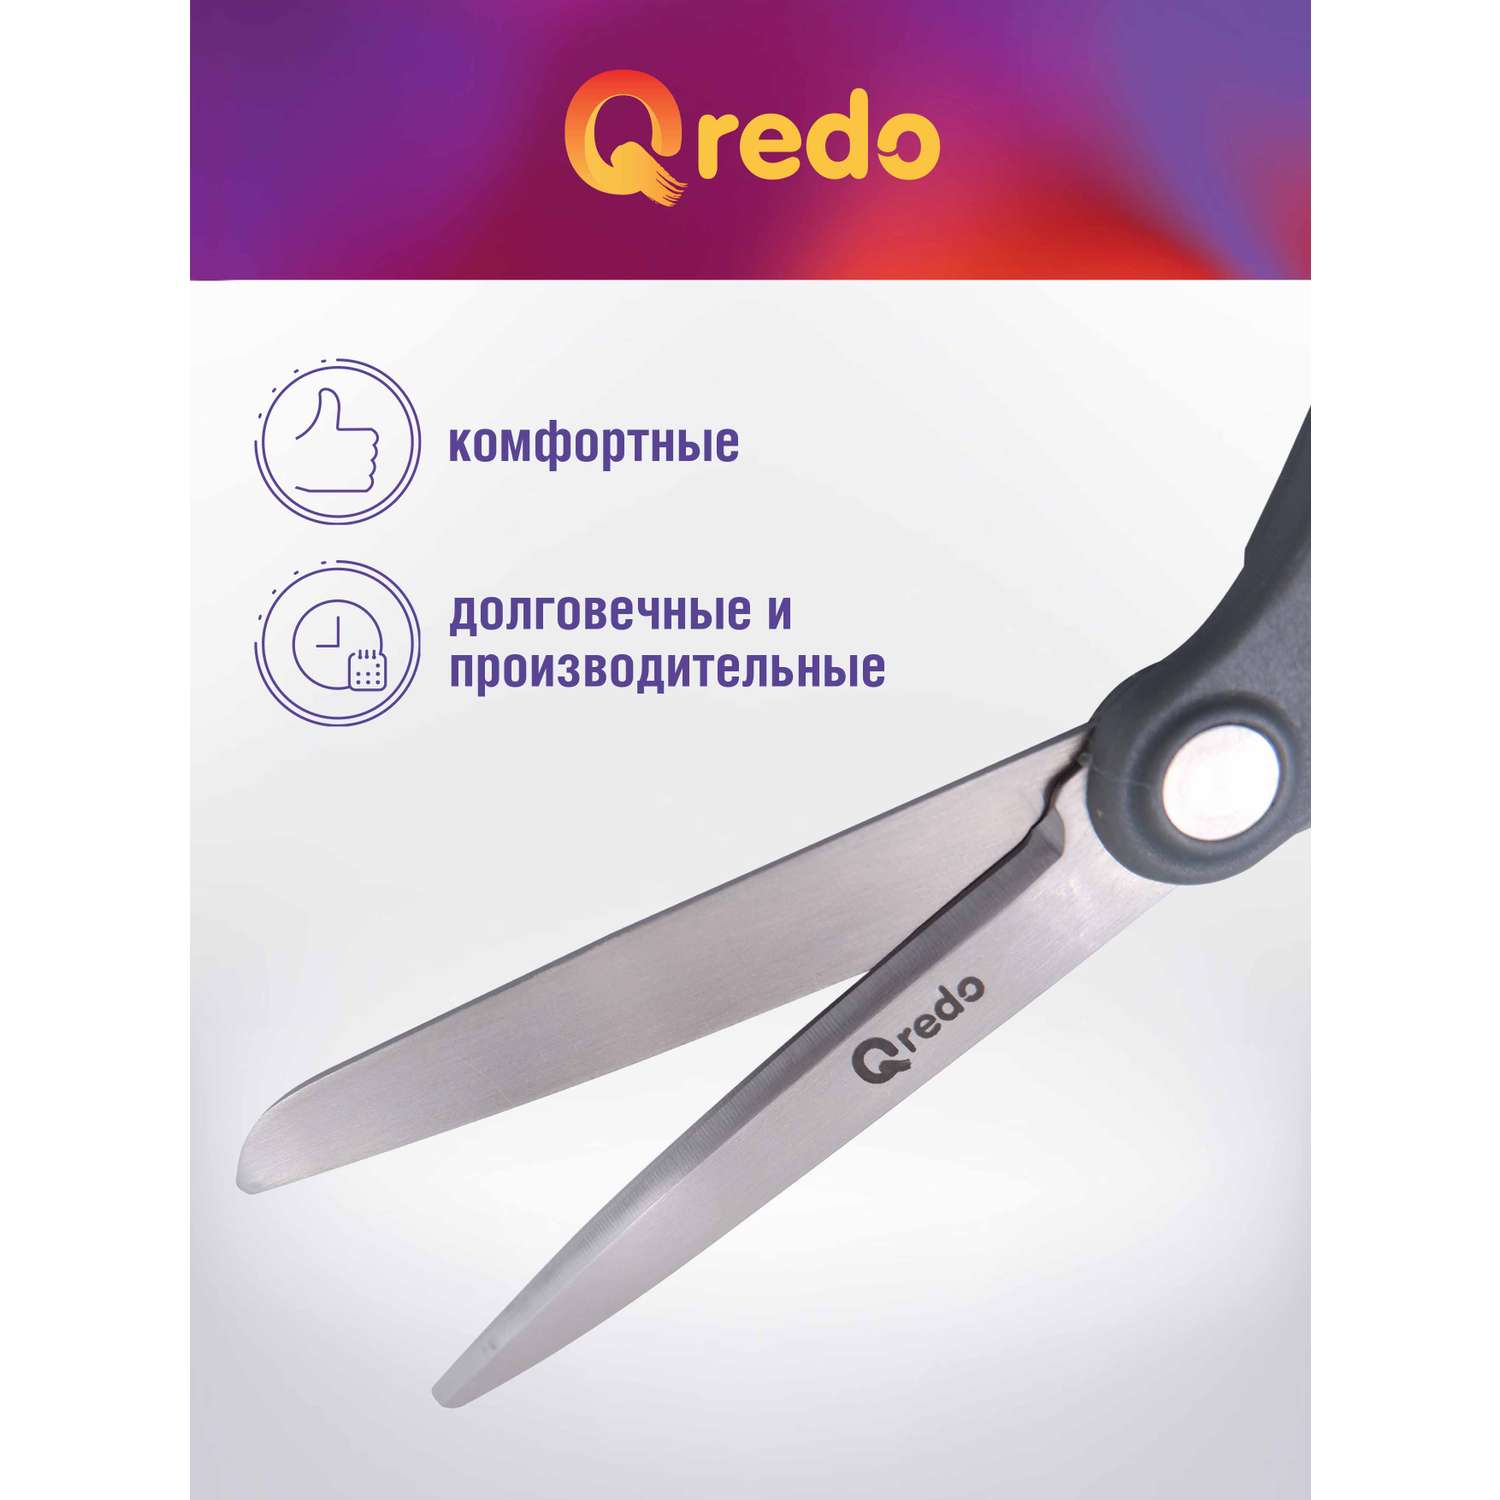 Ножницы Qredo 17 см ADAMANT 3D лезвие эргономичные ручки серый синий пластик прорезиненные - фото 3